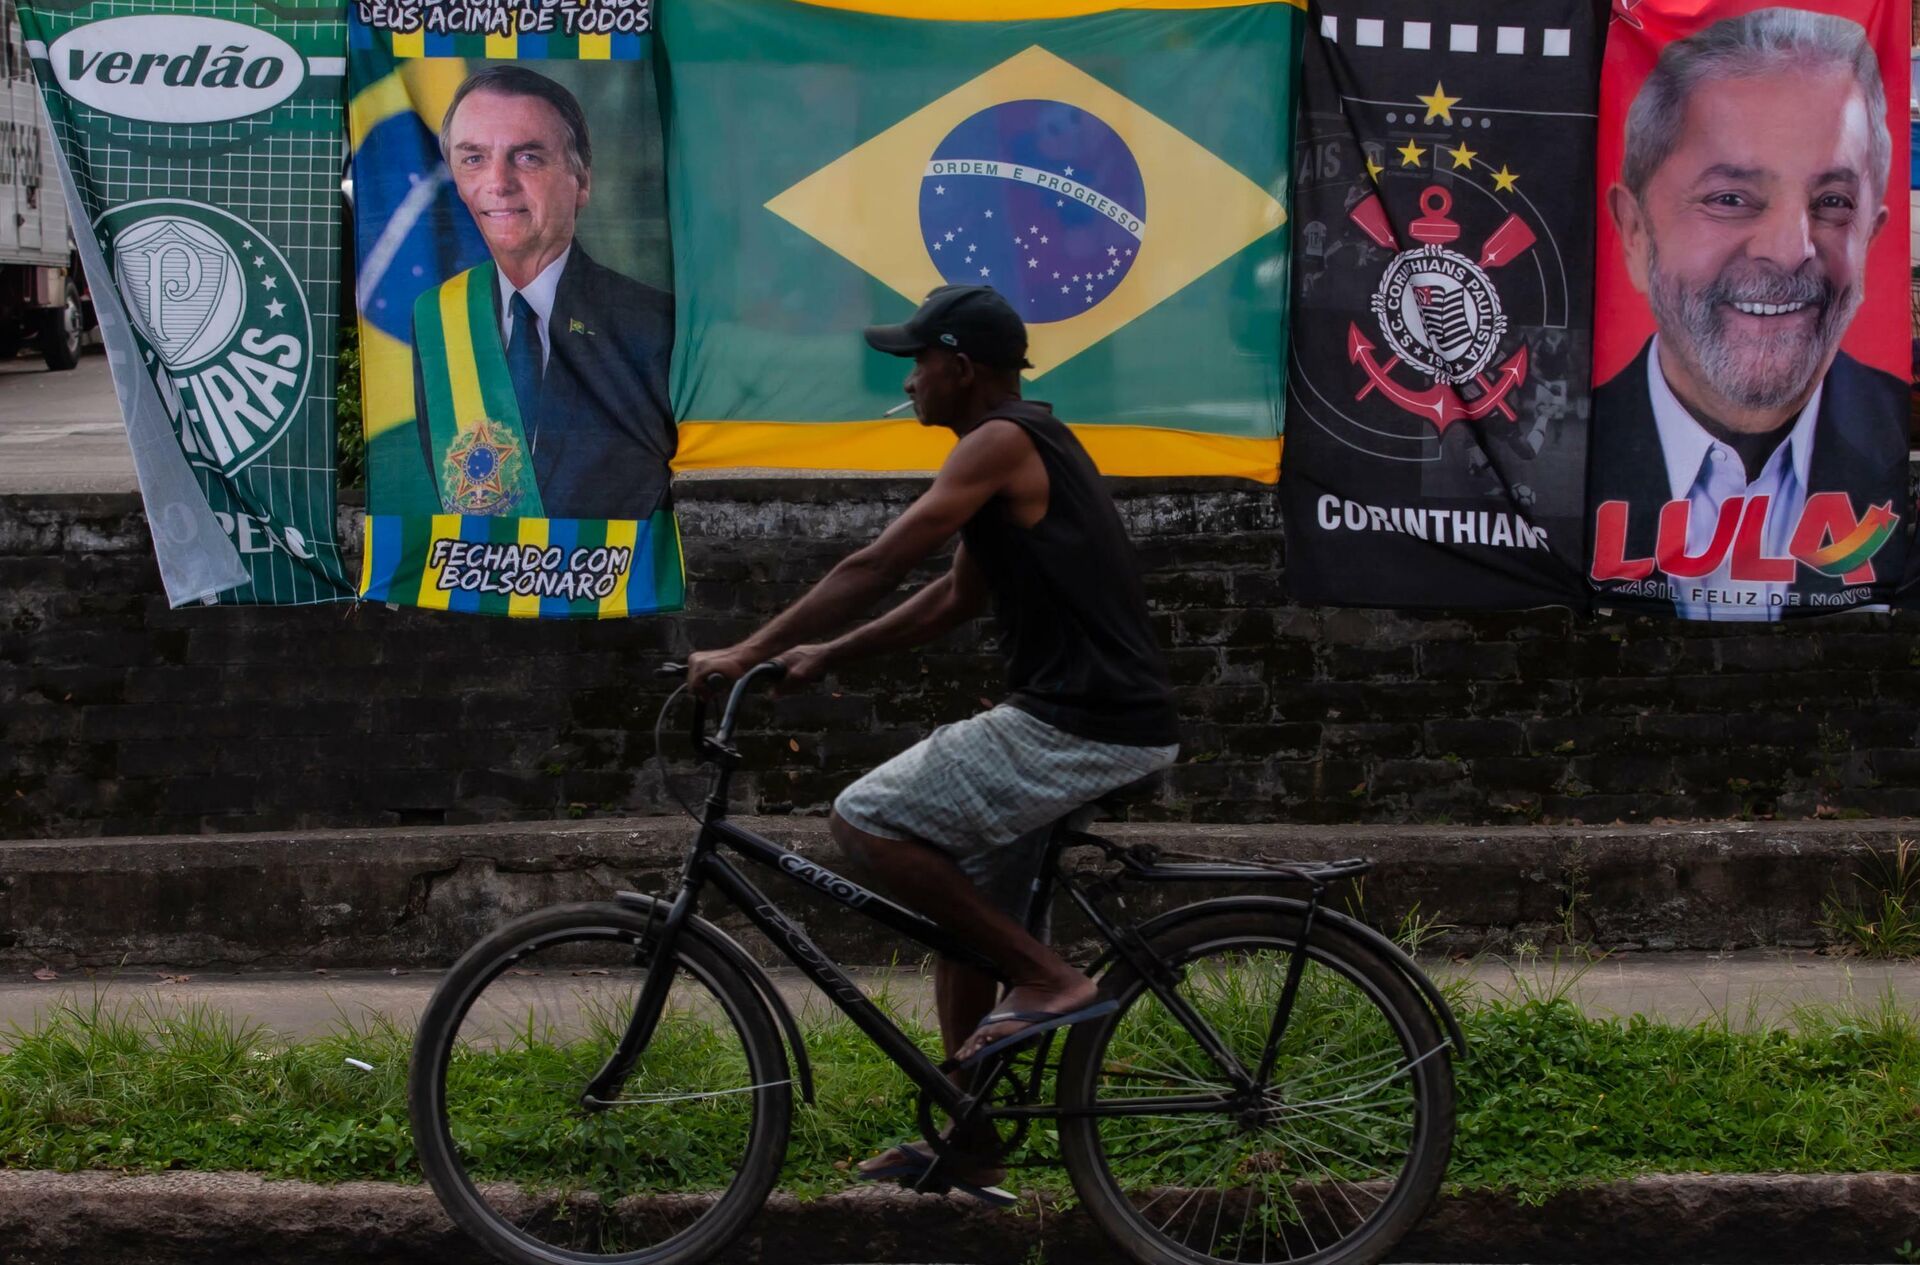 Ambulante vende bandeiras de Jair Bolsonaro e Lula no mesmo varal na cidade de Santos, em São Paulo, em 25 de janeiro de 2022 - Sputnik Brasil, 1920, 08.02.2022